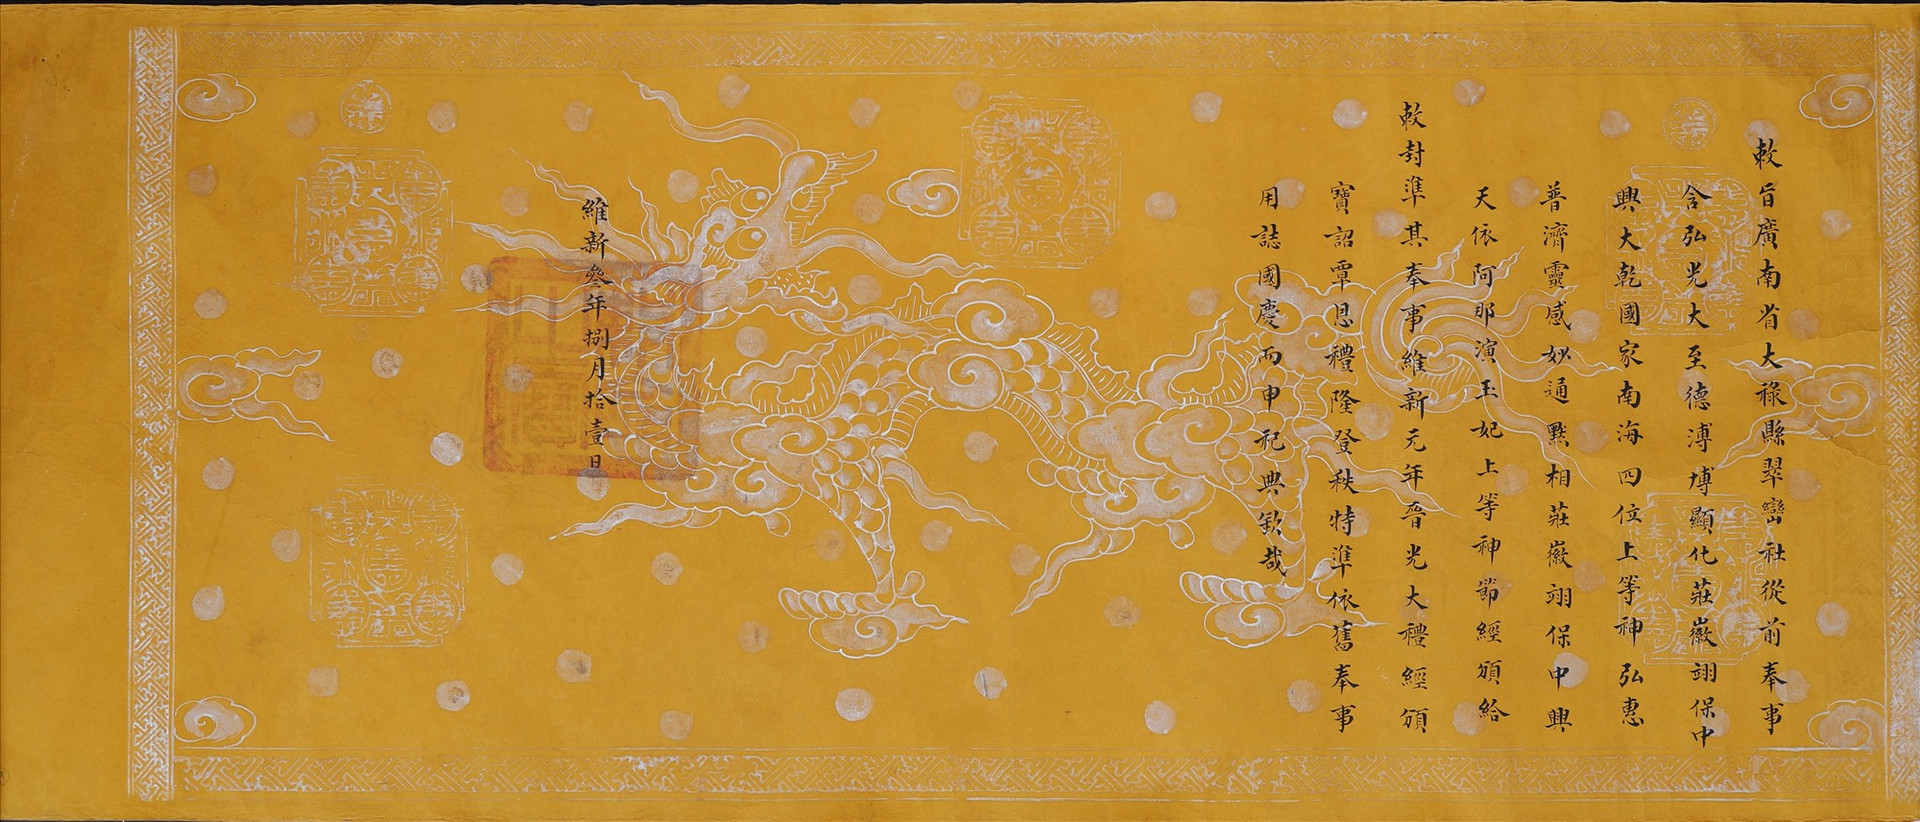 Sắc phong thần Tứ vị thánh nương và Thiên Y A Na ở Túy Loan đời vua Duy Tân thứ 3 (1909).